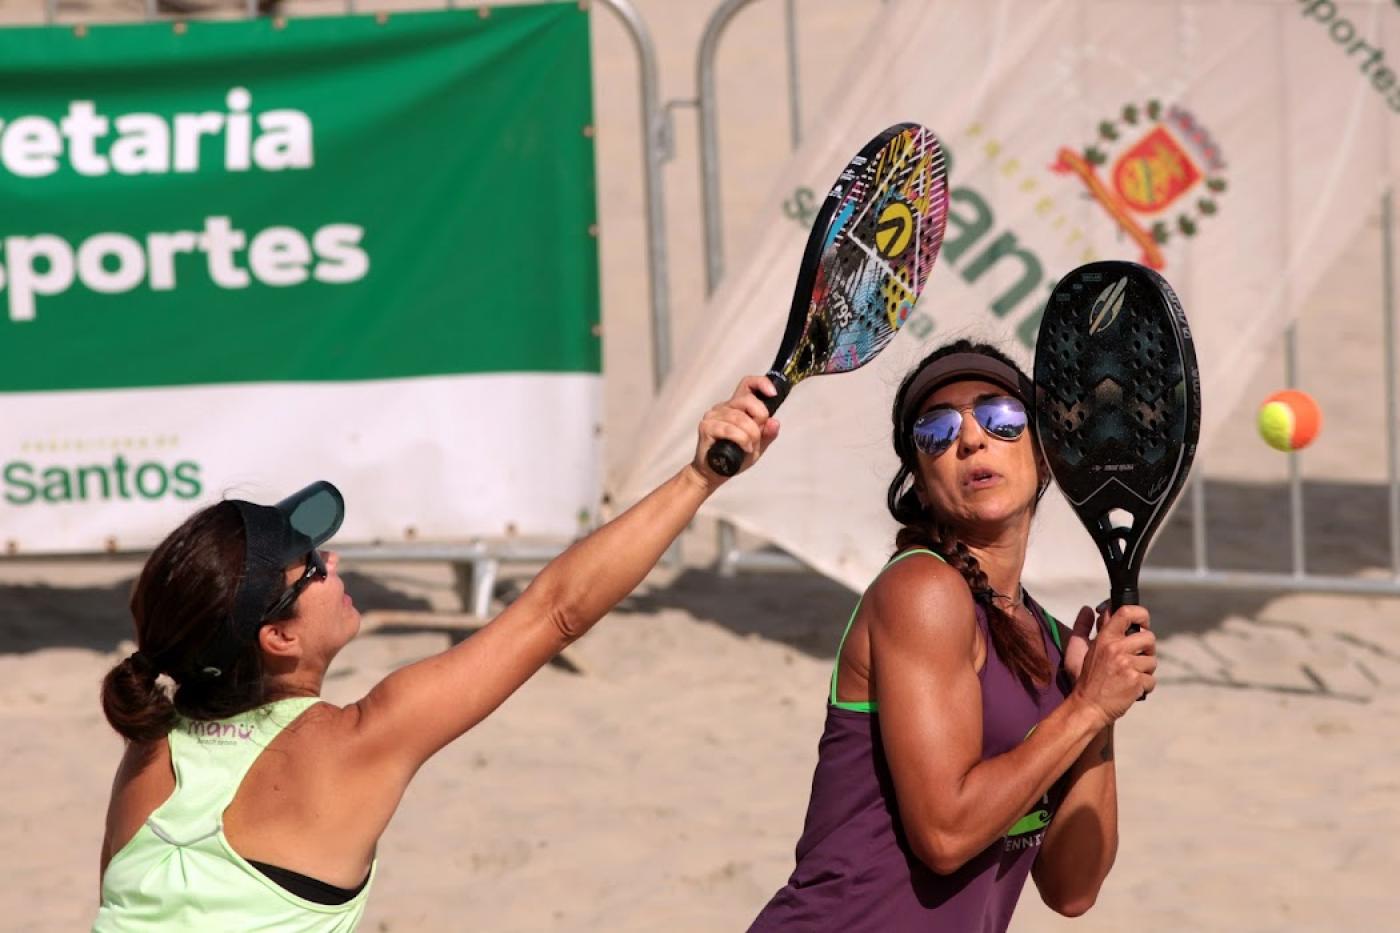 Torneio de Beach Tennis em Rifaina chega ao fim e já é sucesso pelo segundo  ano consecutivo - Thmais